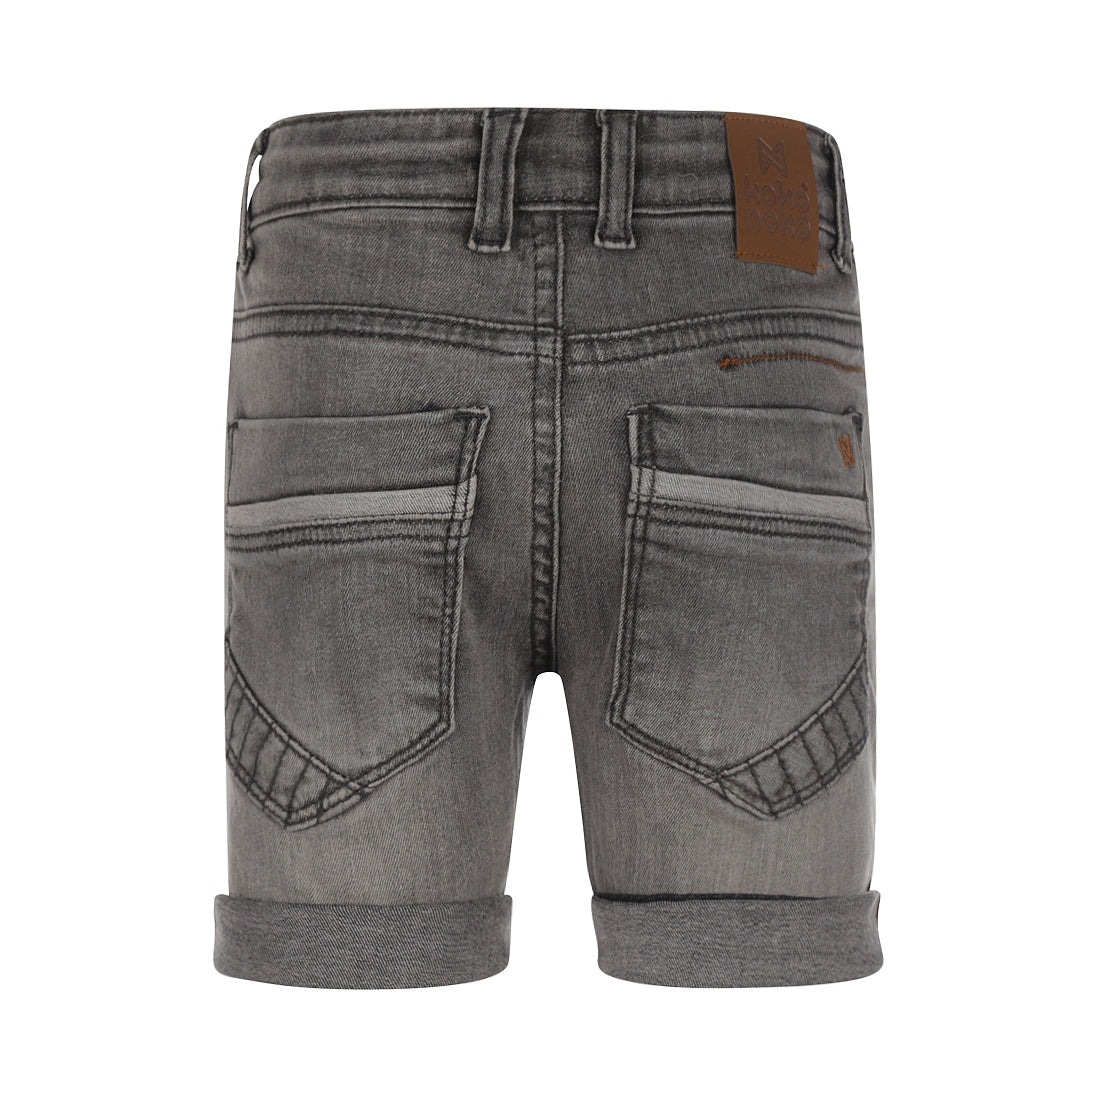 Jongens Jeans shorts turn-up loose fit van Koko Noko in de kleur Grey jeans in maat 128.